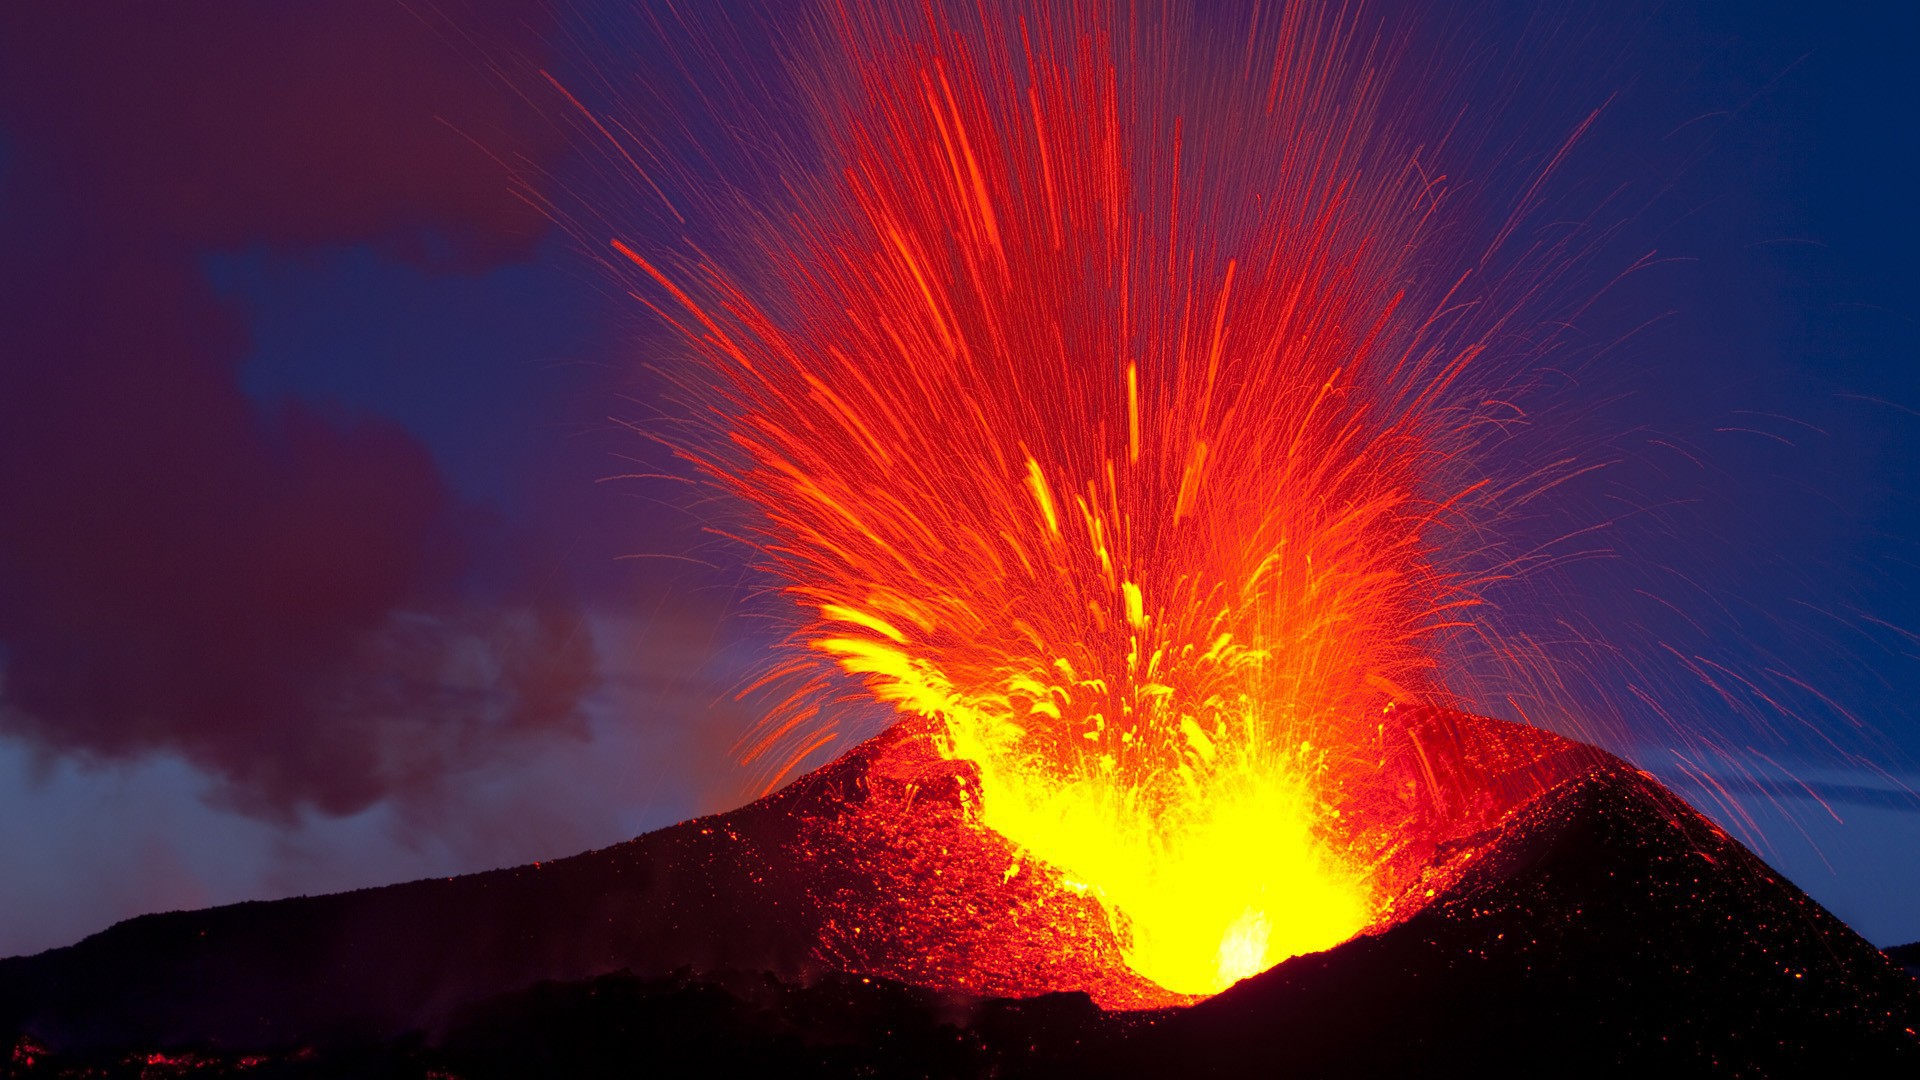 "Это только начало": ученые ожидают нового сильного извержения вулкана после затишья на Гавайях